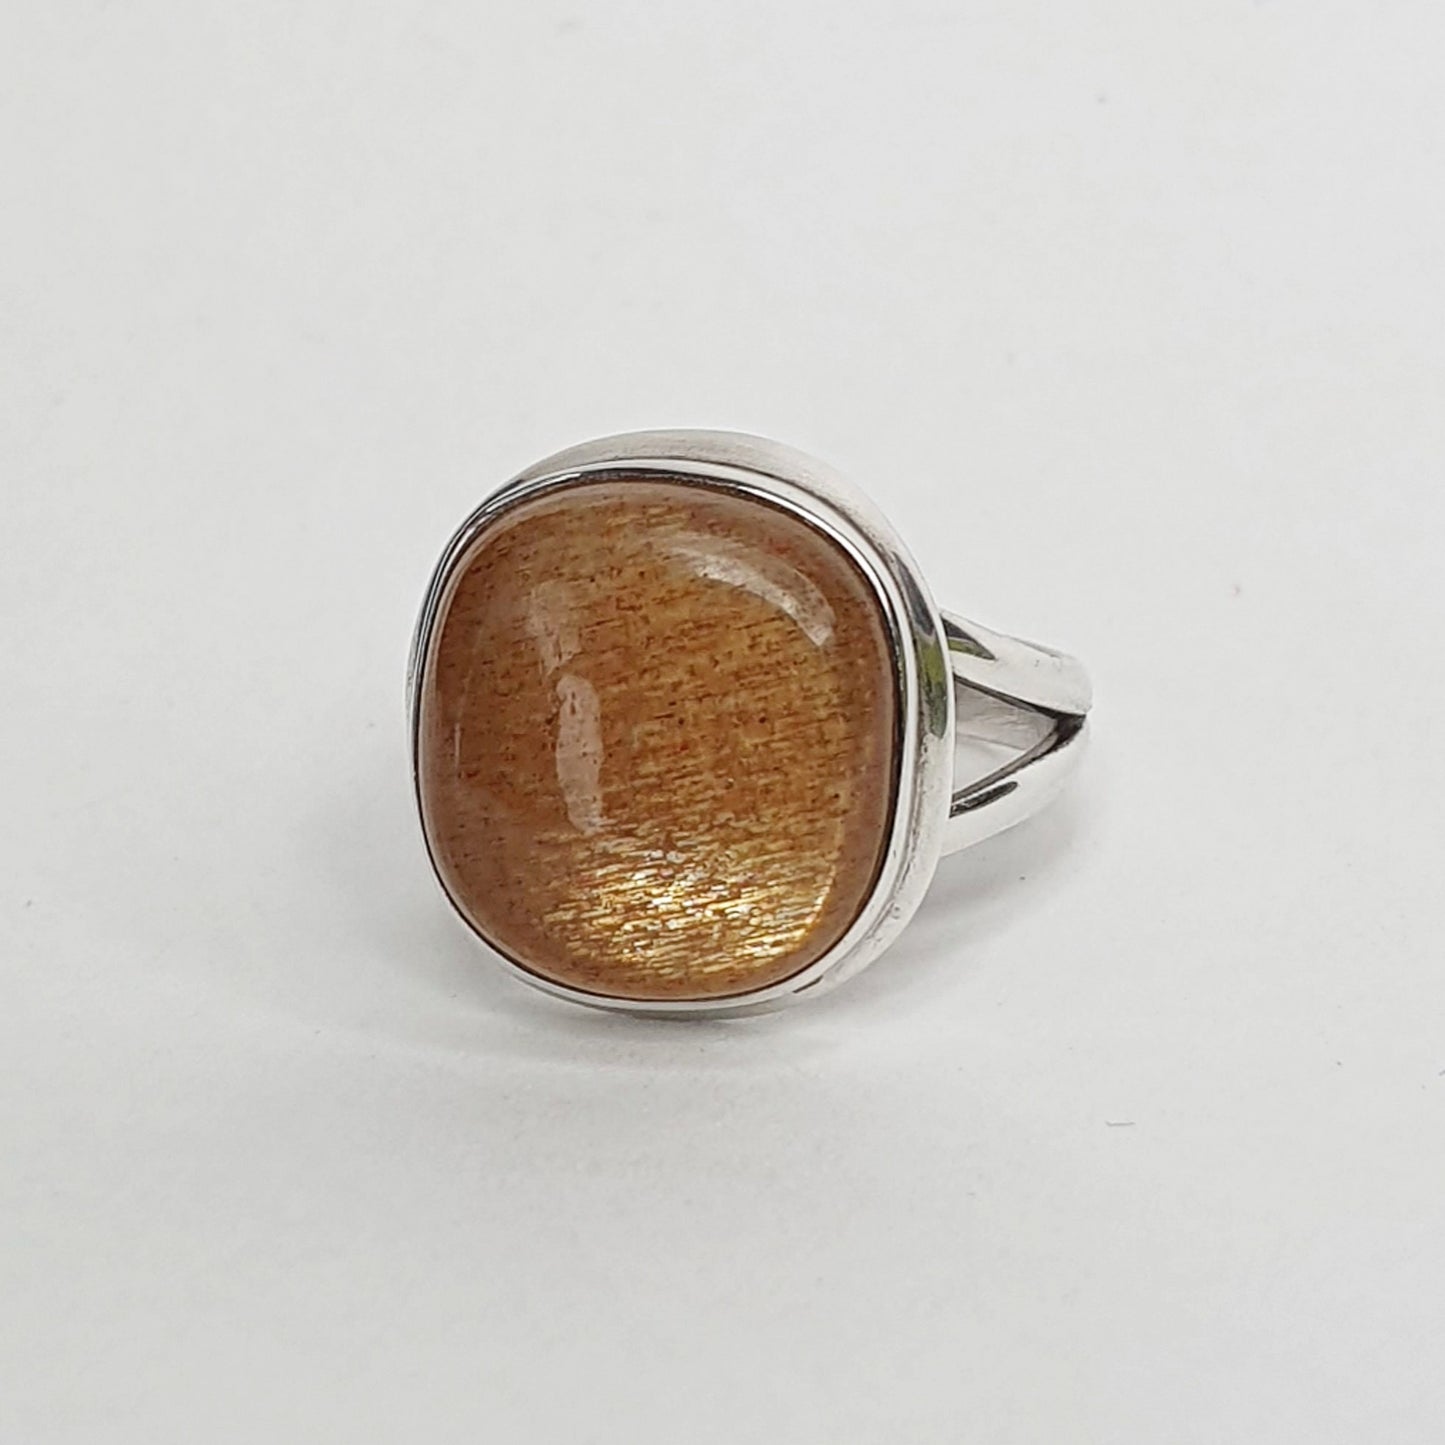 Golden Sunstone Ring - Size 7 / O - ON SALE